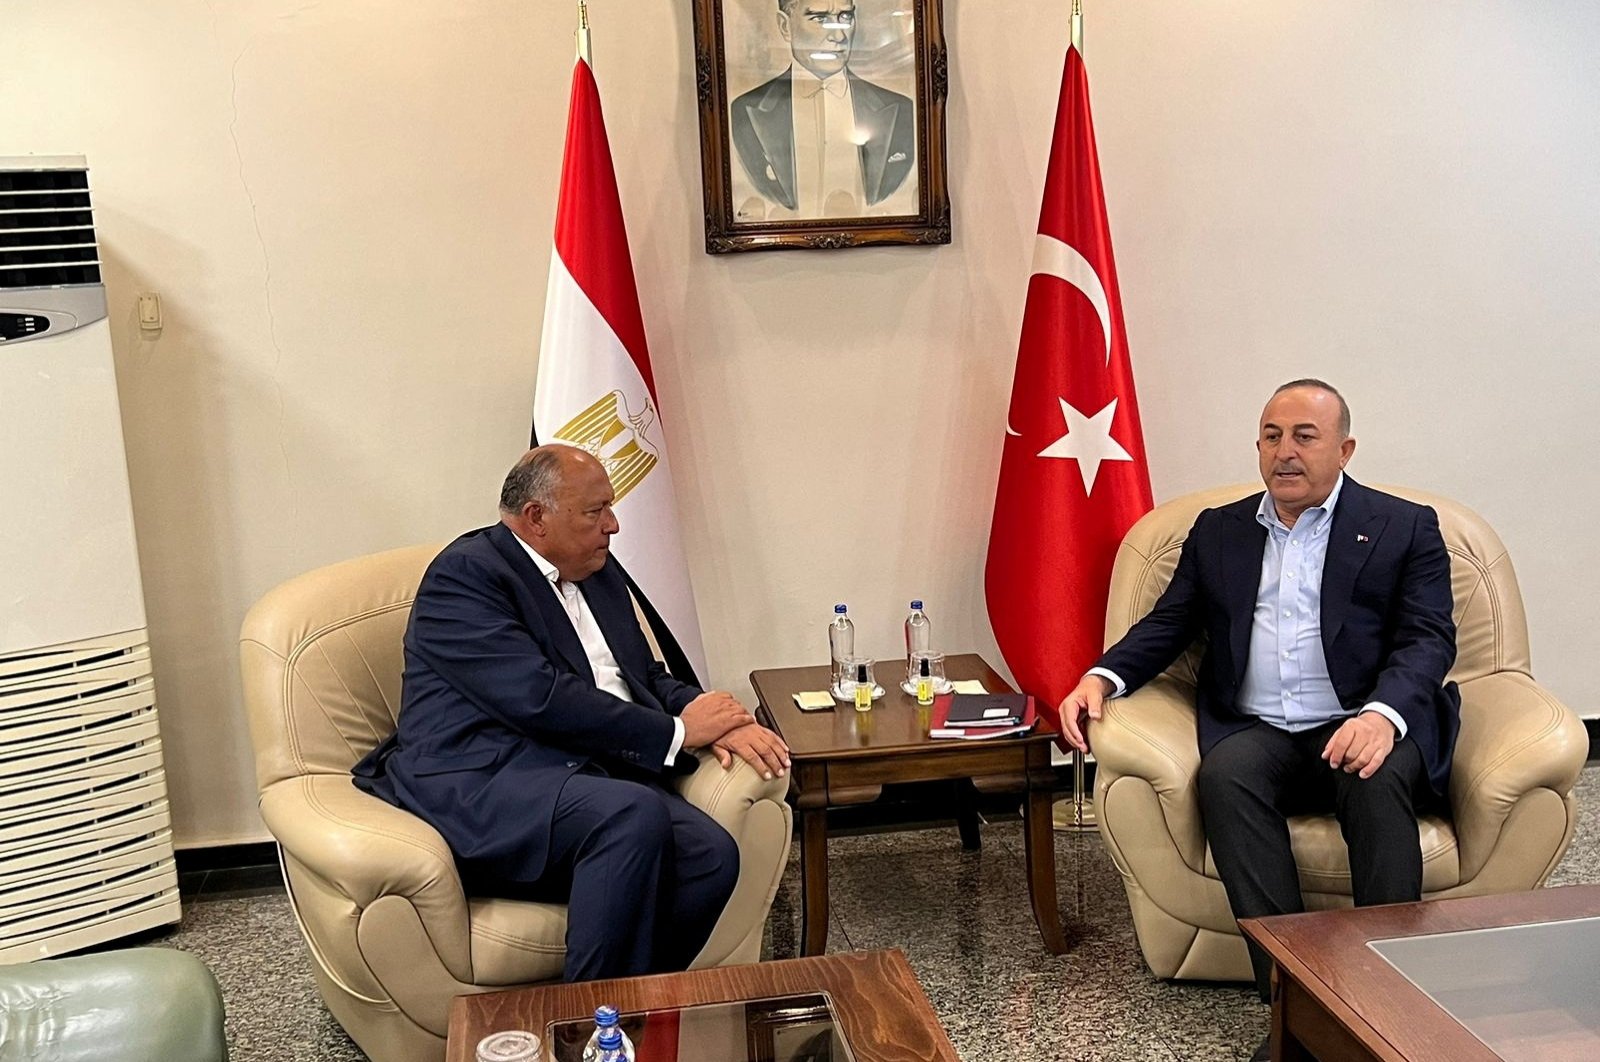 Mesir bertujuan untuk memulihkan hubungan dengan Türkiye dengan proses baru